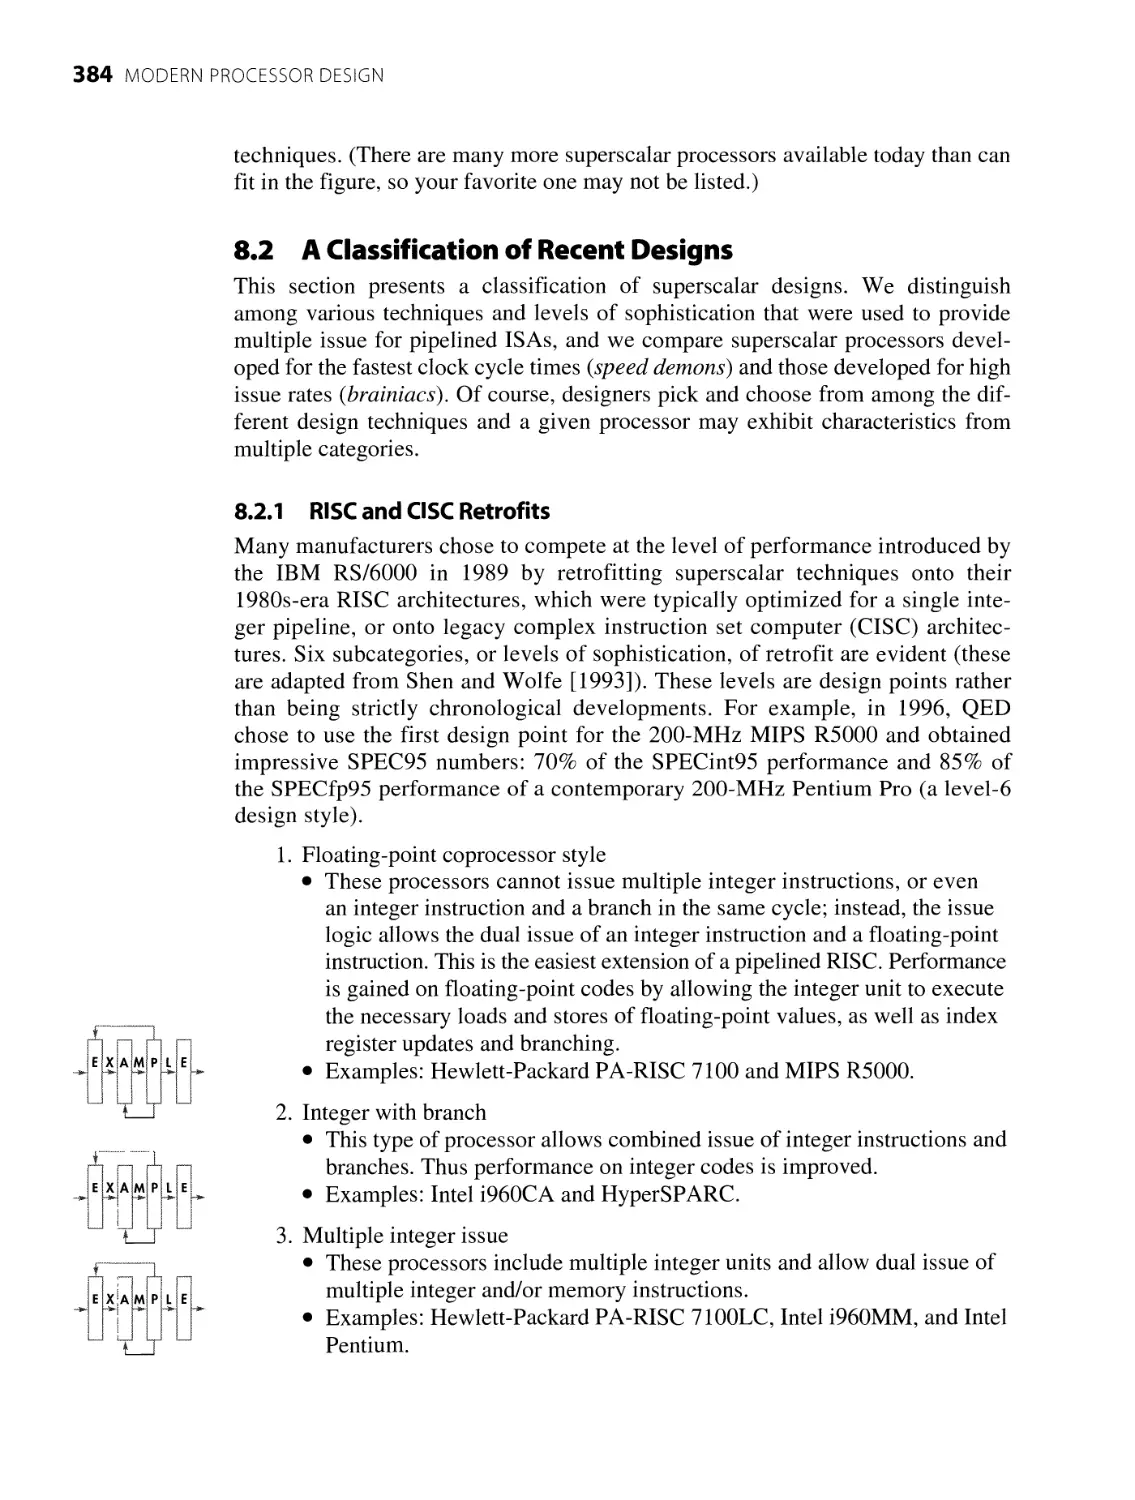 8.2 A Classification of Recent Designs
8.2.1 RISC and CISC Retrofits